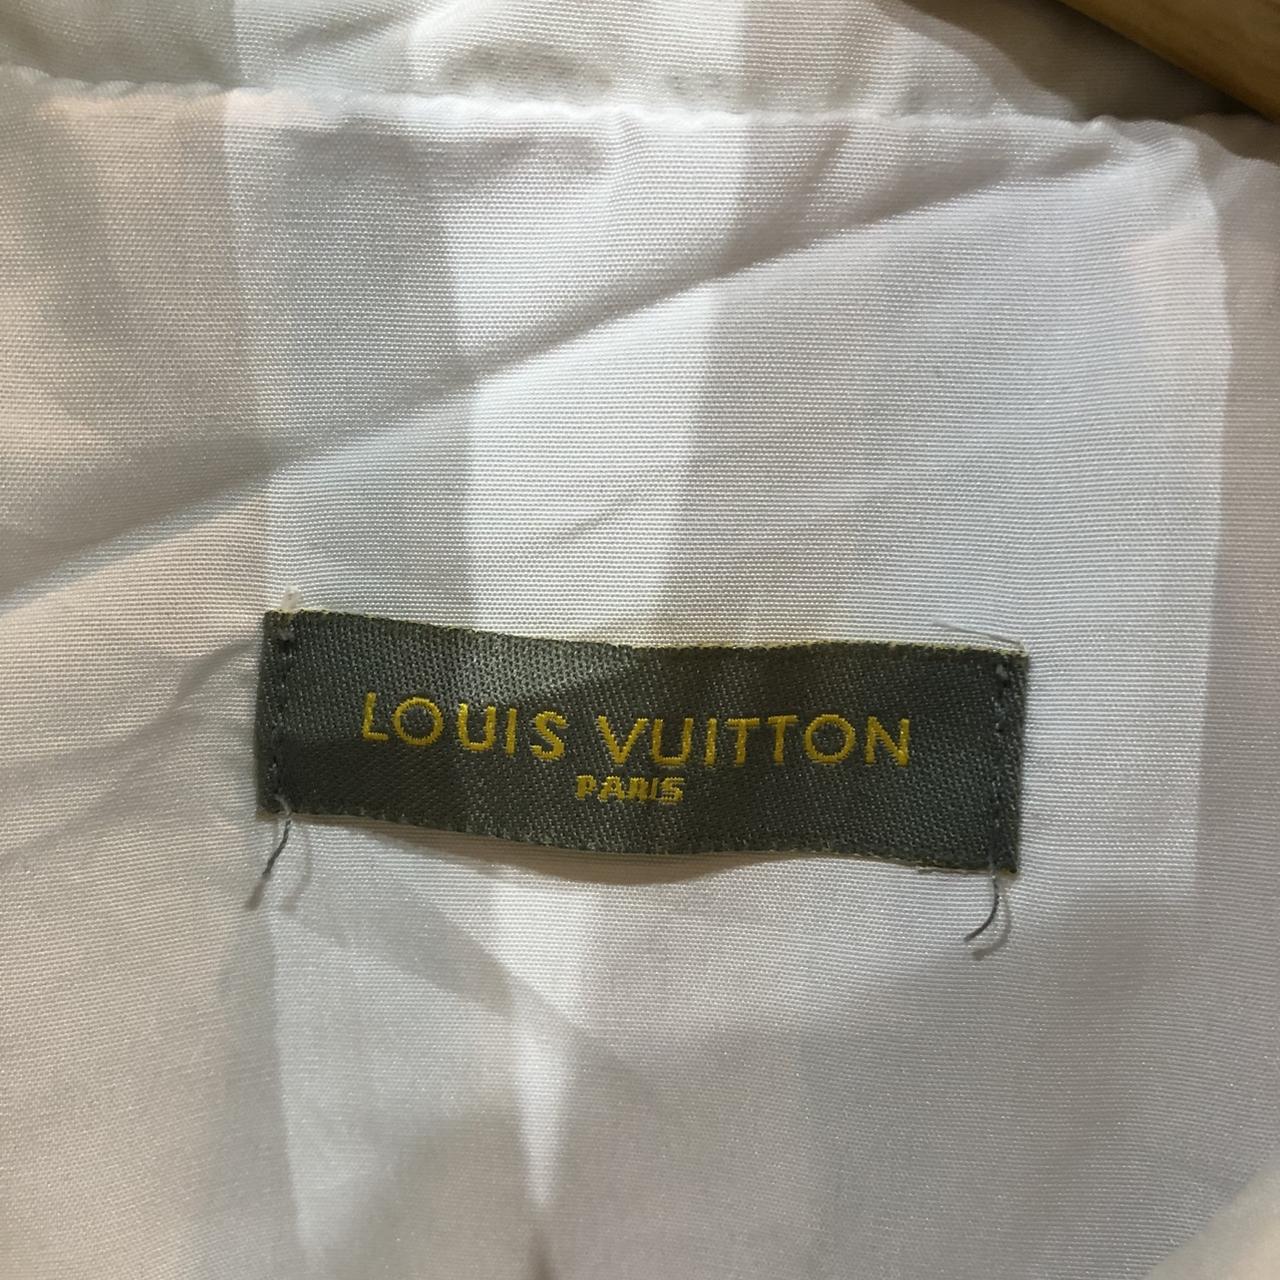 Louis Vuitton Windbreaker lookalike/ Size Small - Depop